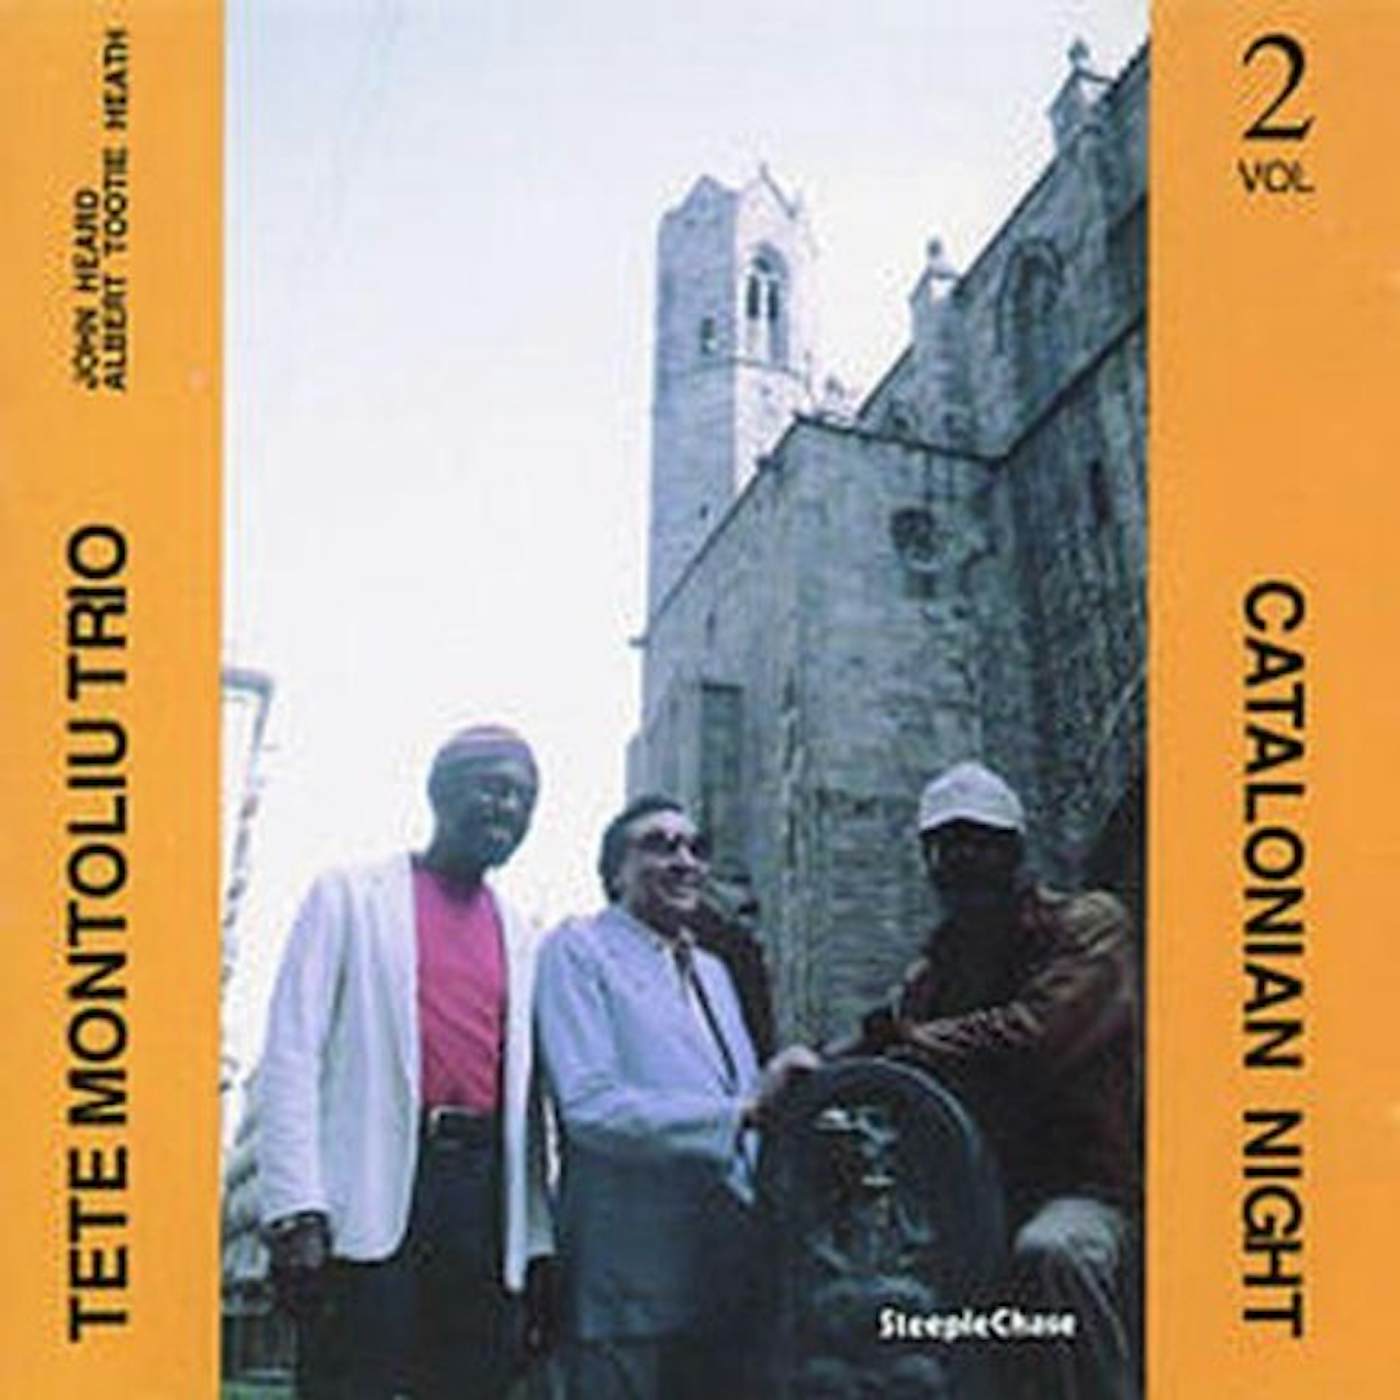 Tete Montoliu CATALONIAN NIGHTS 2 CD